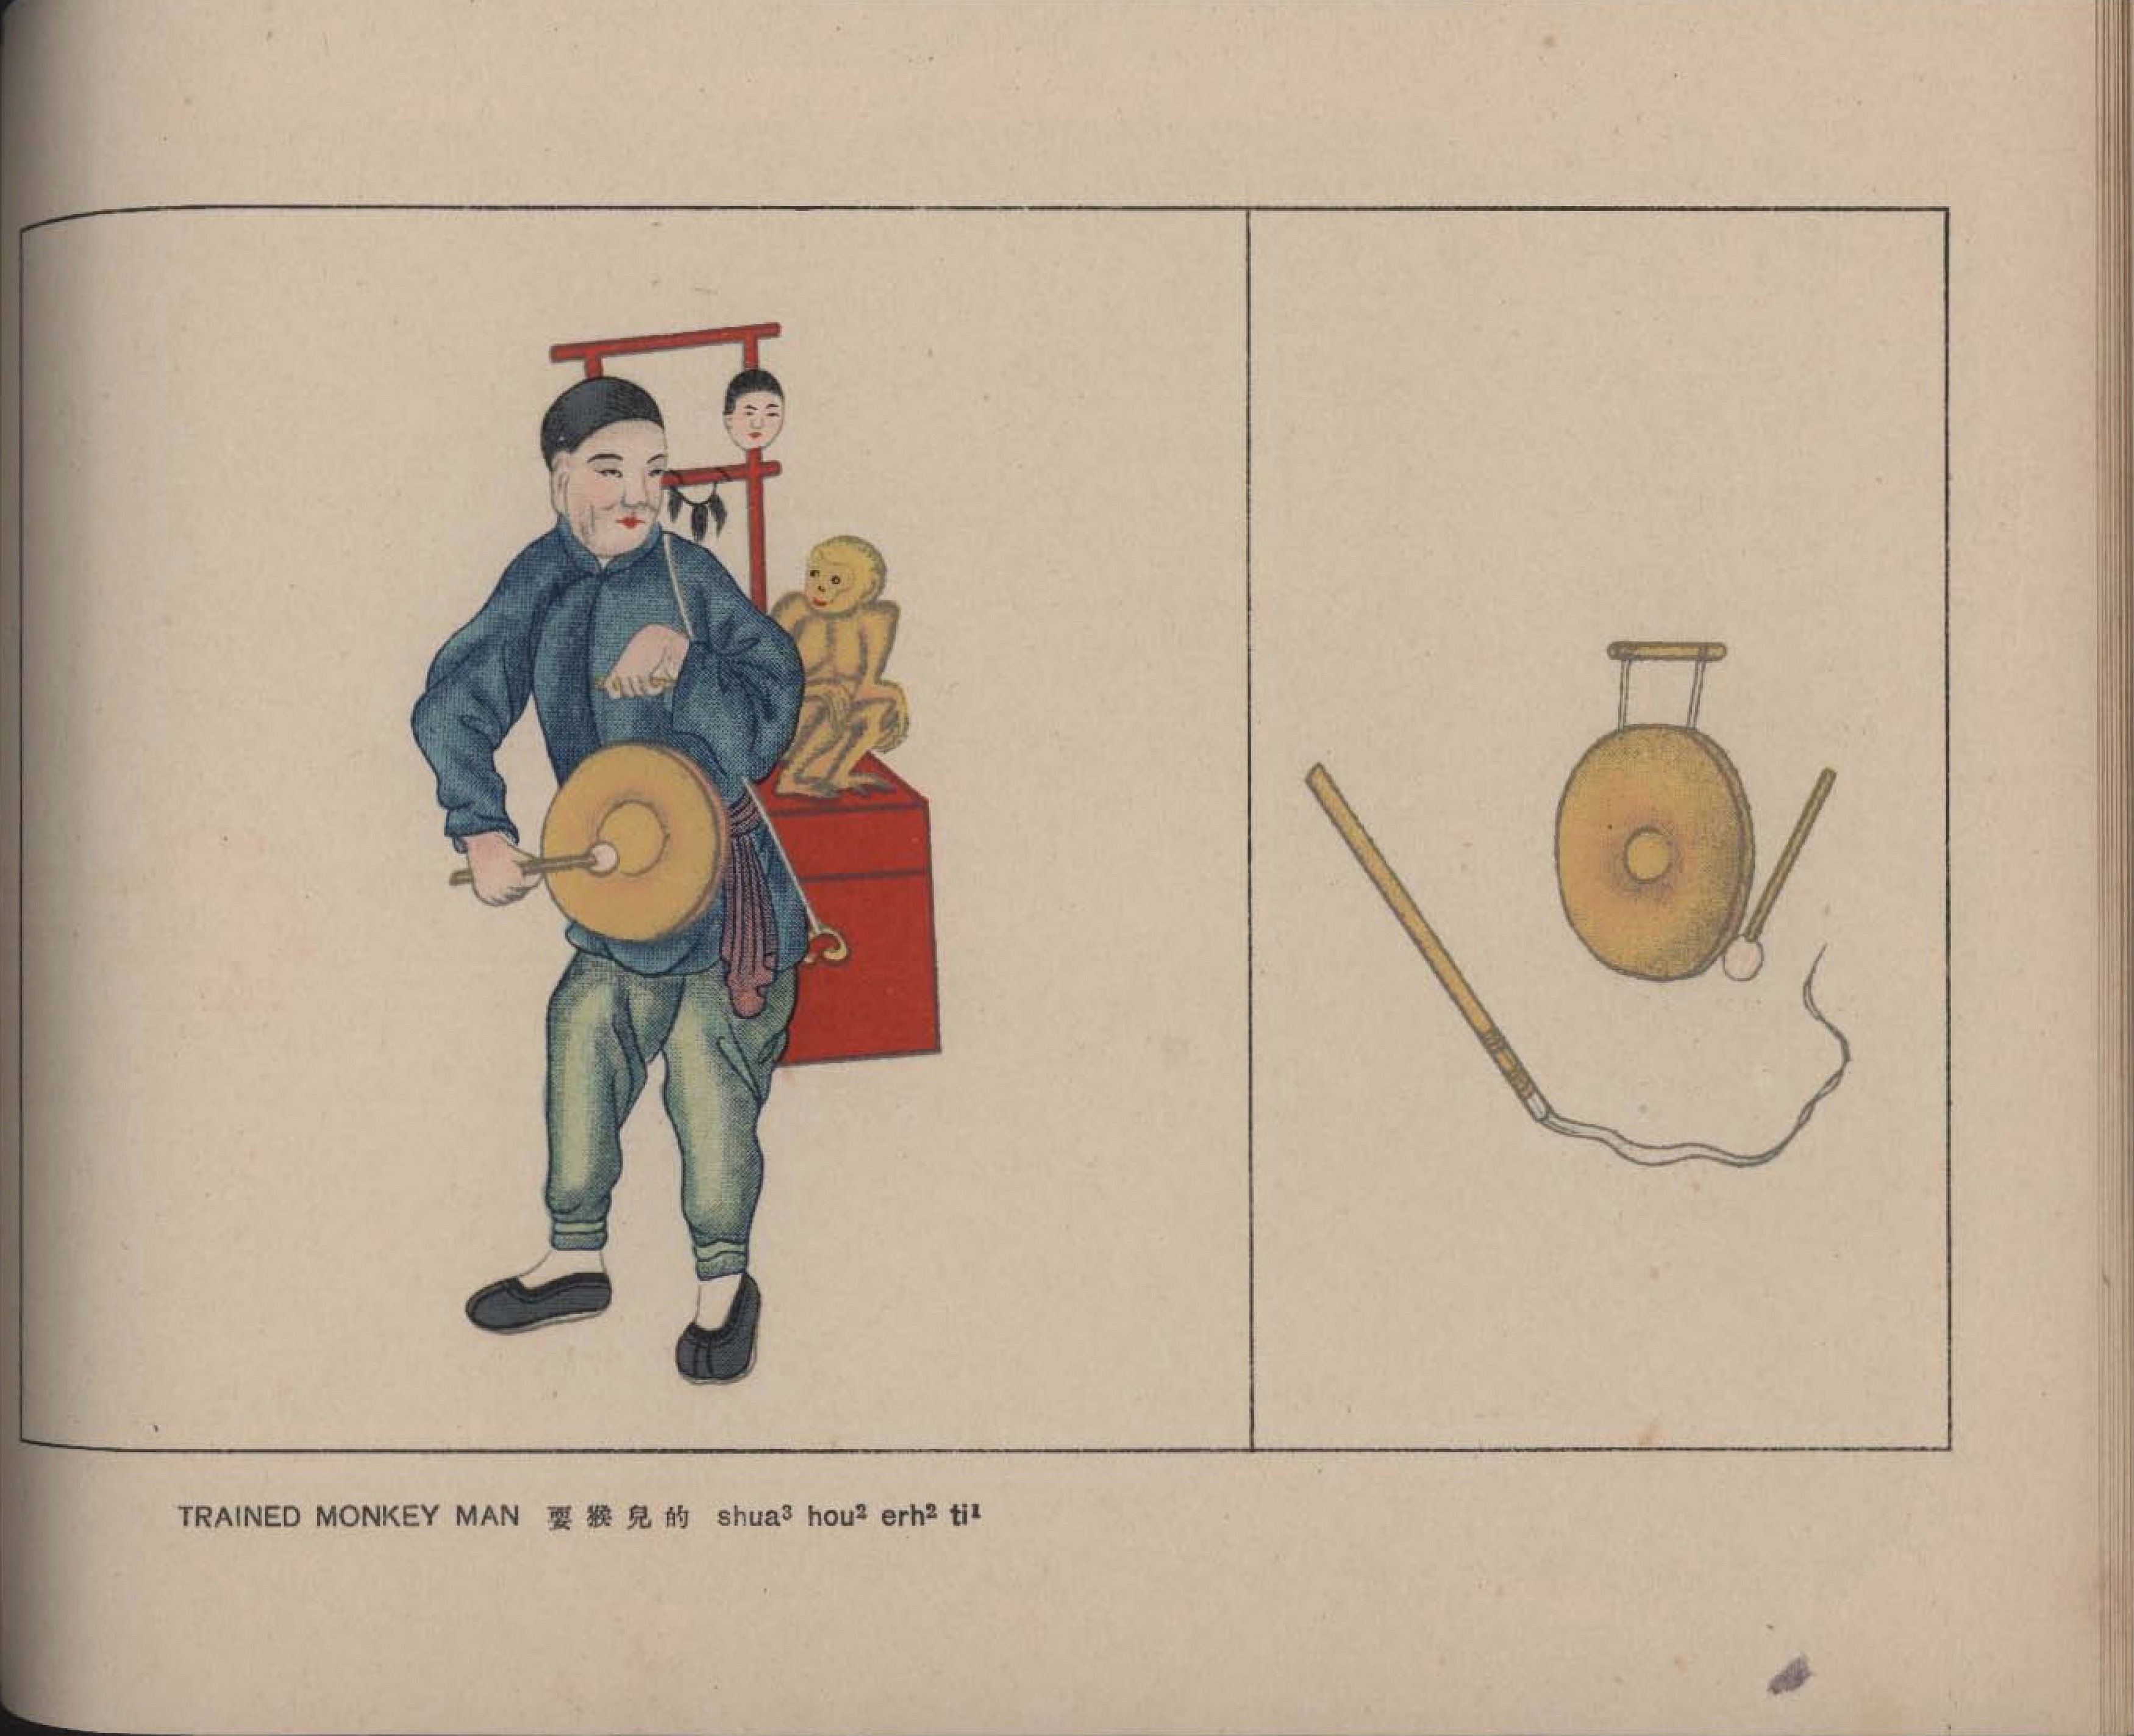 京都叫卖图.Calls.Sounds and Merchandise of the Peking Street Peddlers.By S.V Con.jpg